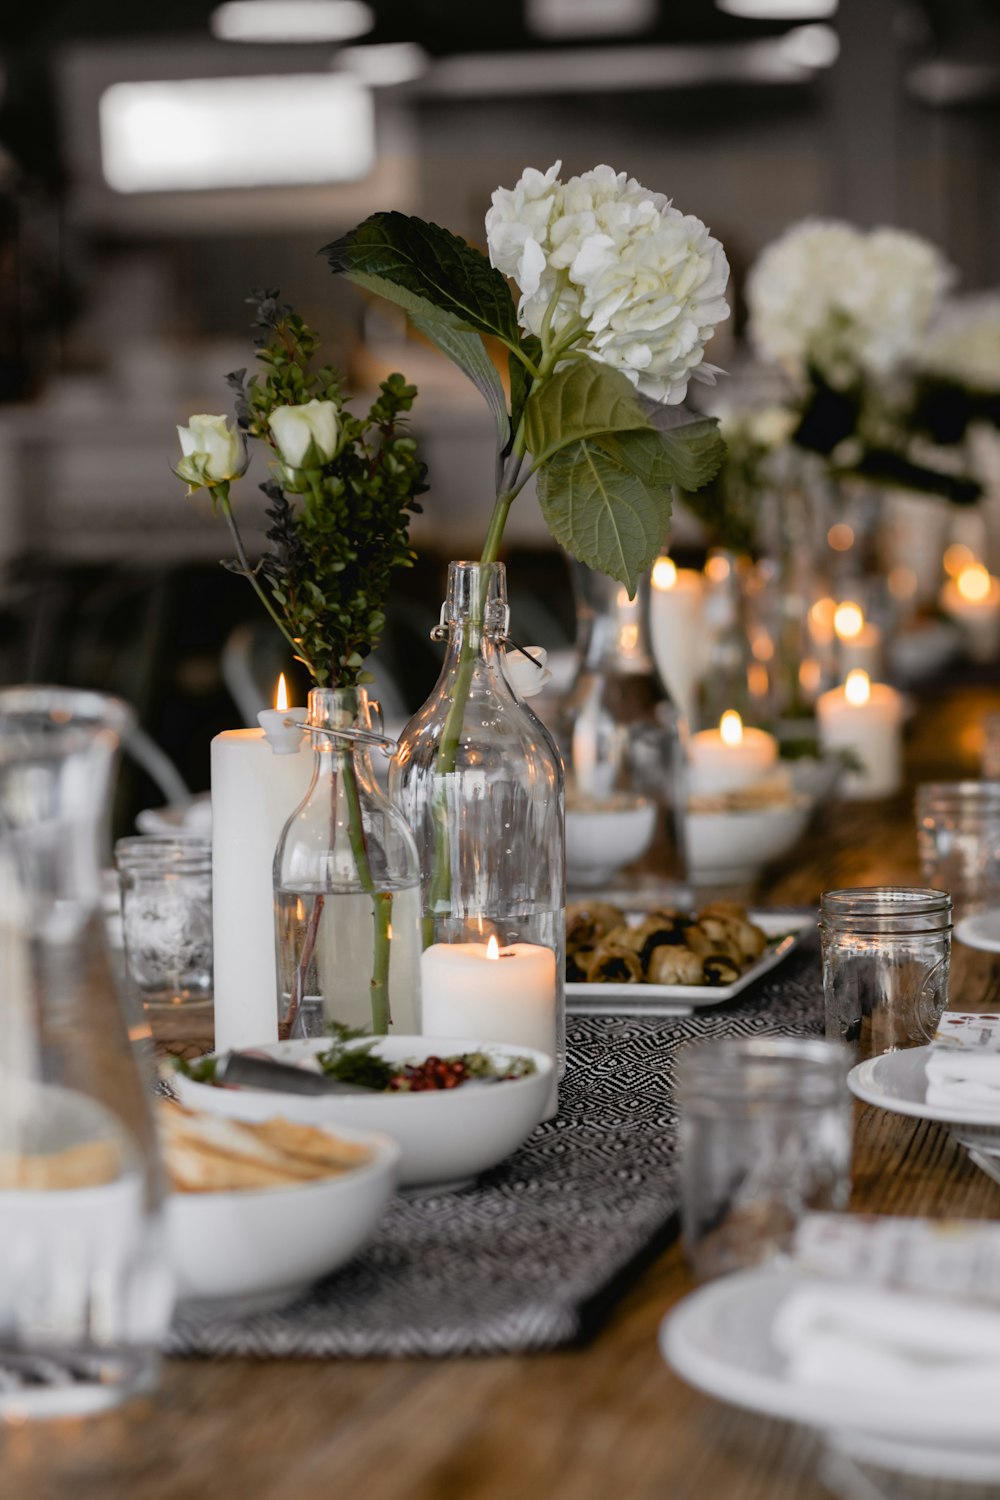 테이블에 촛불이 켜진 옆에있는 흰 꽃의 선택적 초점 사진